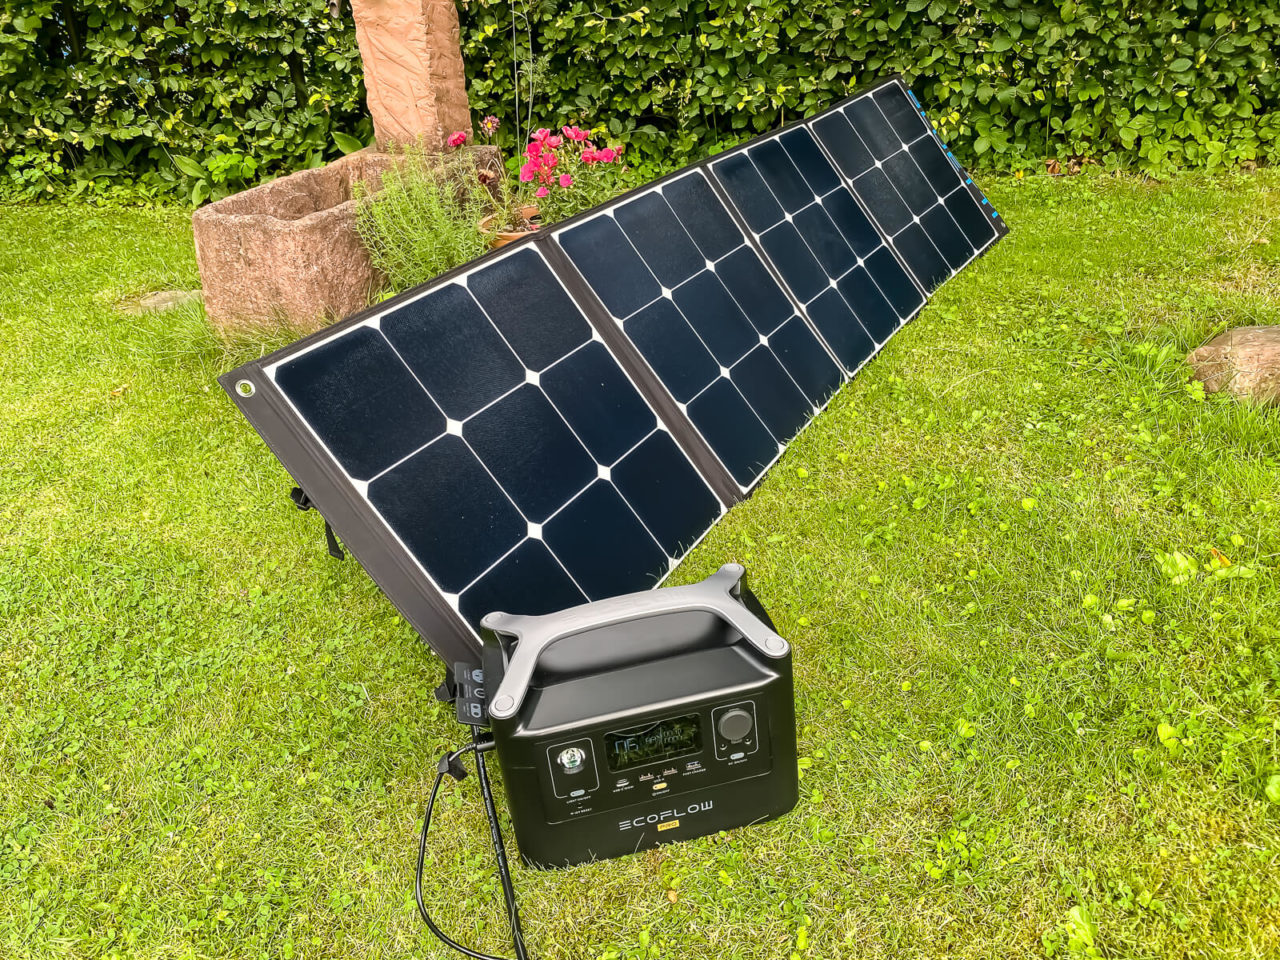 Bluetti SP200 Solarpanel Test - Messung mit RiverPro, Leistung, Wolken